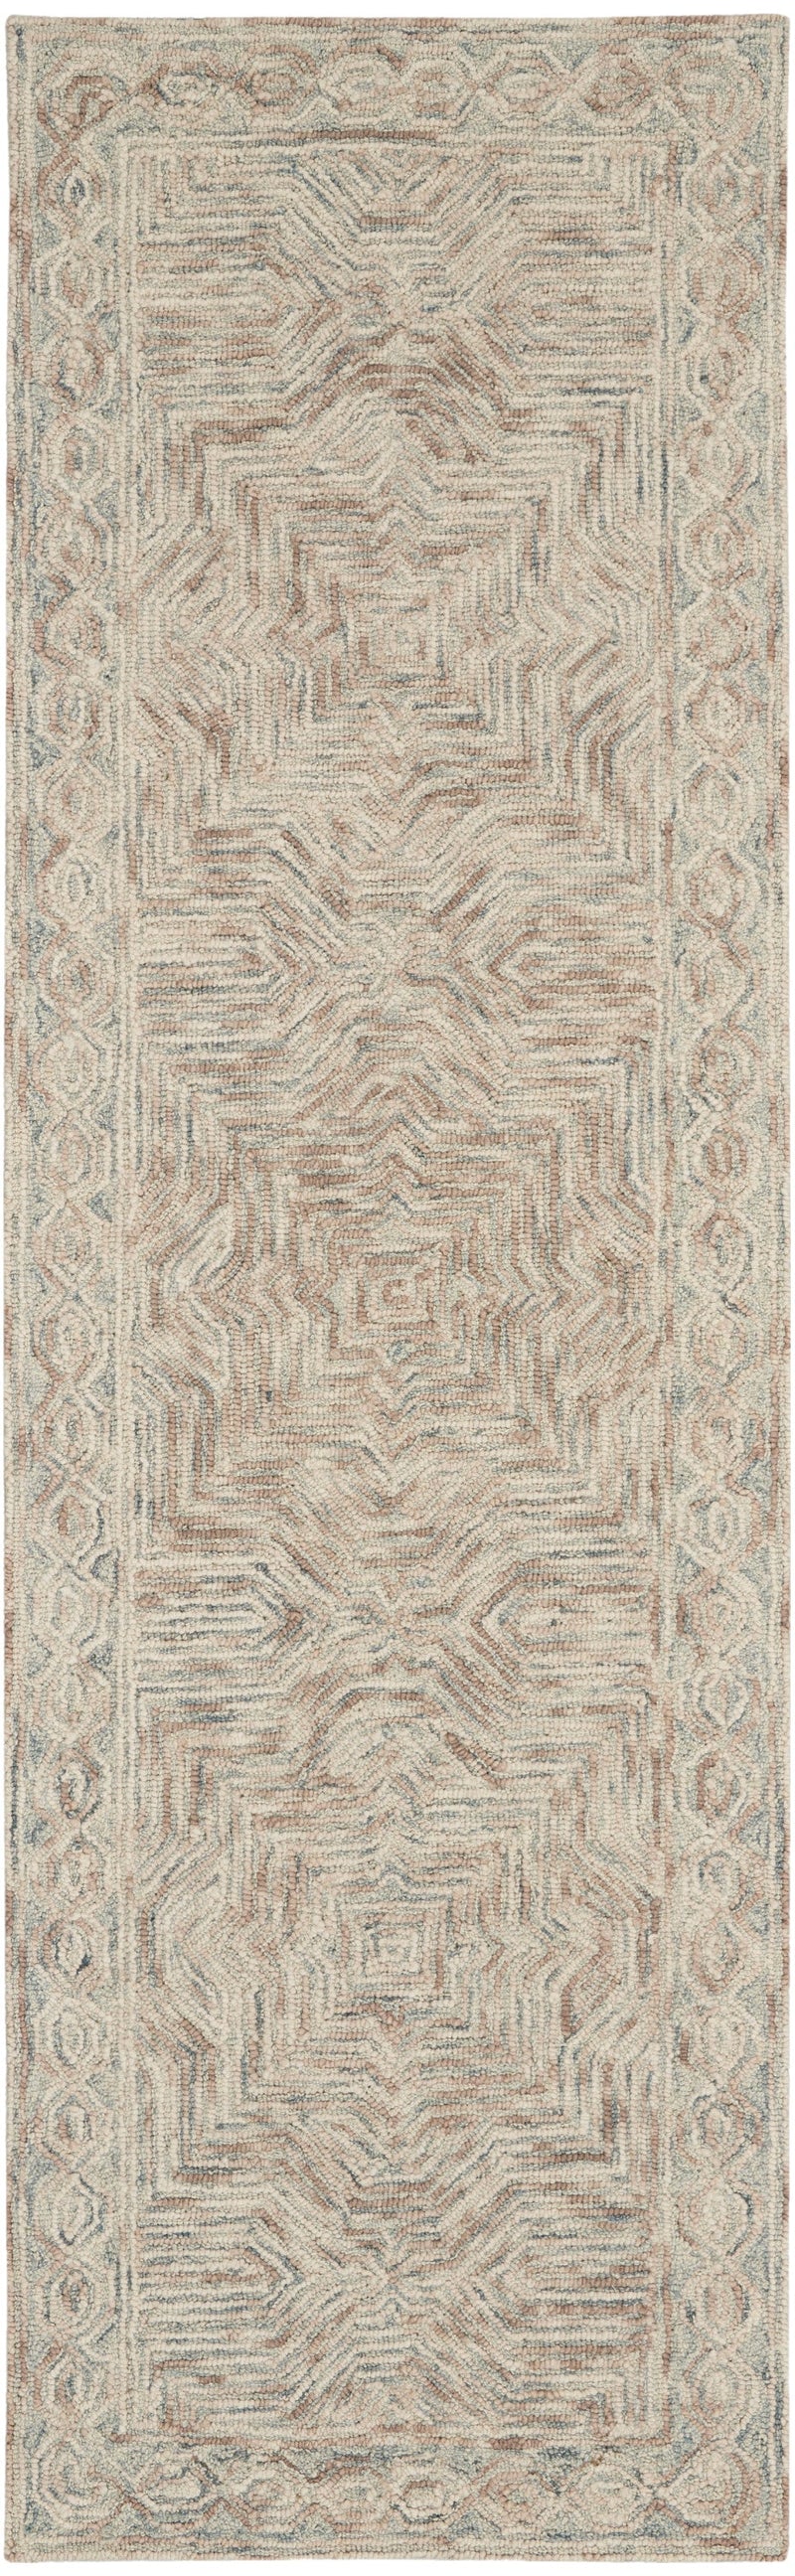 media image for interlock handmade blue ivory rug by nourison 99446785985 redo 2 230